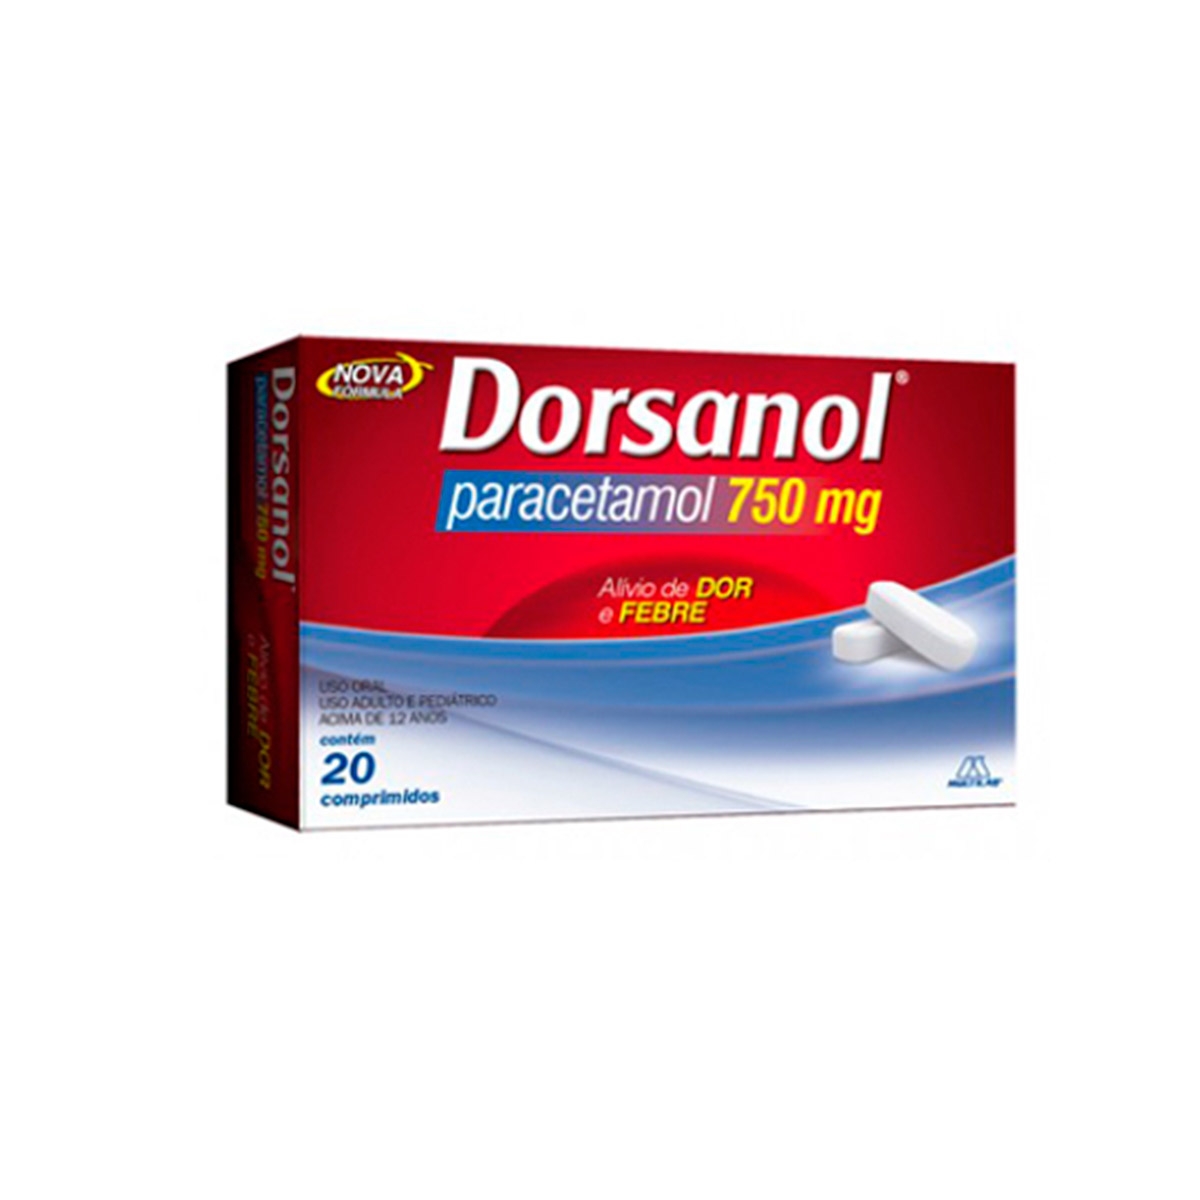 Dorsanol Paracetamol 750mg 20 comprimidos